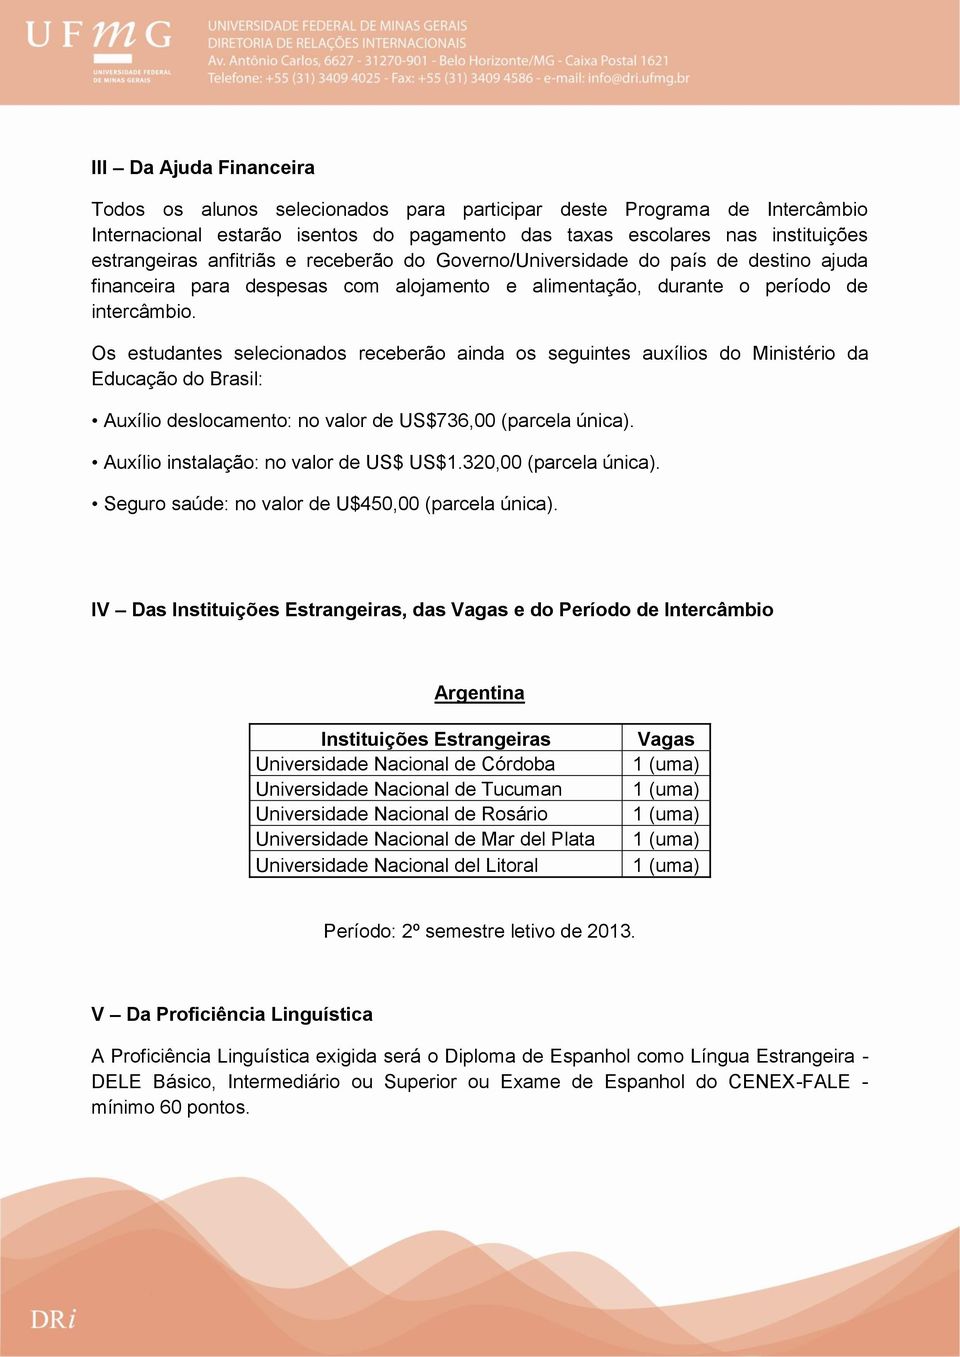 Os estudantes selecionados receberão ainda os seguintes auxílios do Ministério da Educação do Brasil: Auxílio deslocamento: no valor de US$736,00 (parcela única).